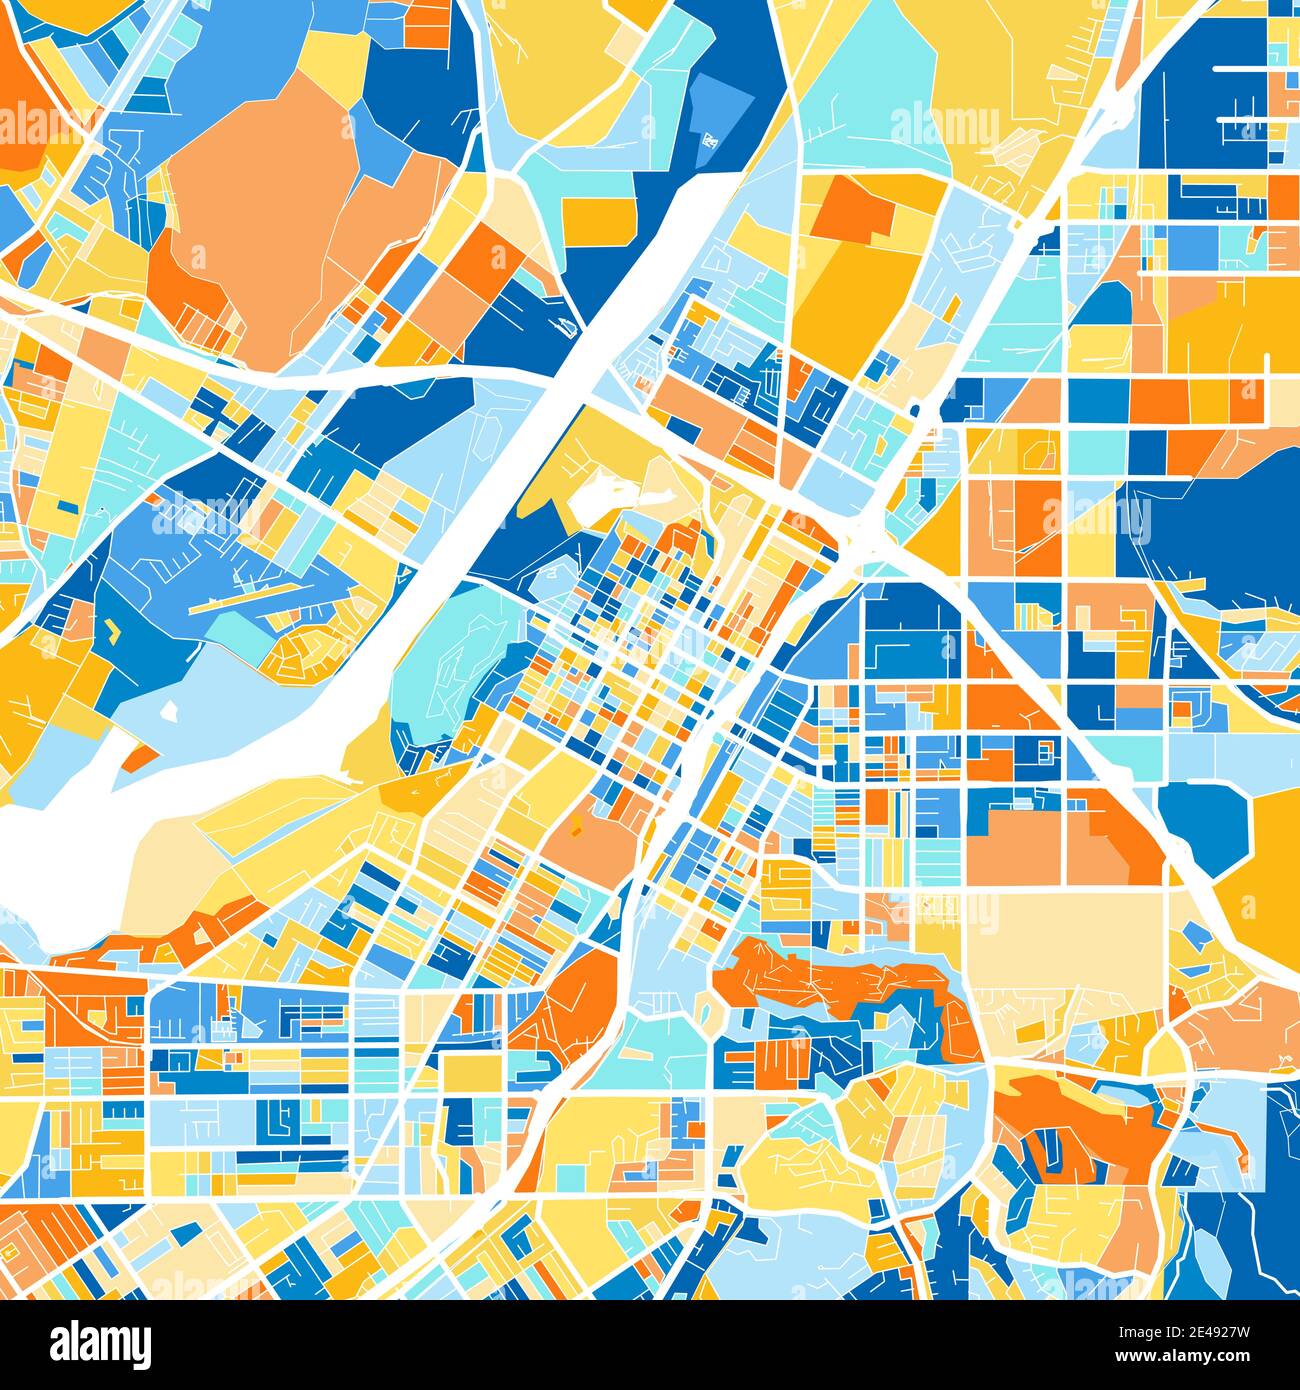 Carte d'art couleur de Riverside, Californie, Etats-Unis dans le blues et l'orange. Les gradations de couleurs de la carte Riverside suivent un motif aléatoire. Illustration de Vecteur